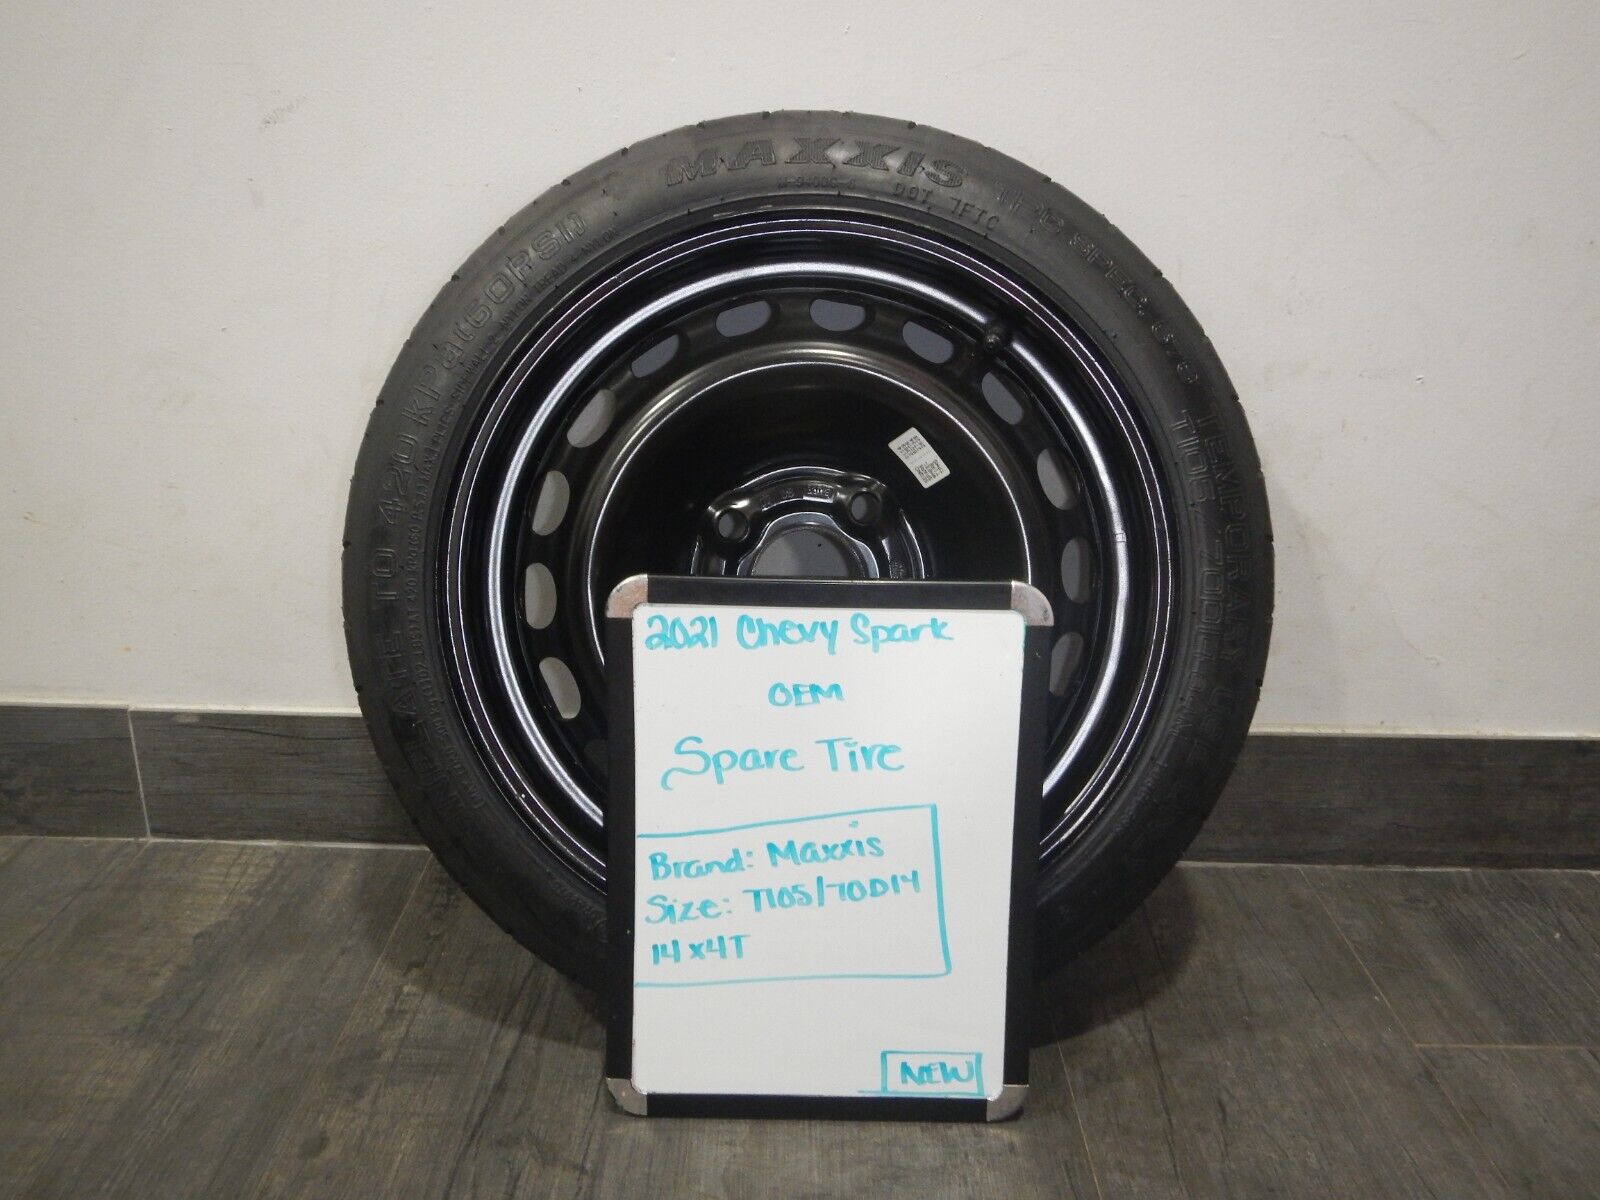 2021 Chevy Spark OEM Spare Tire